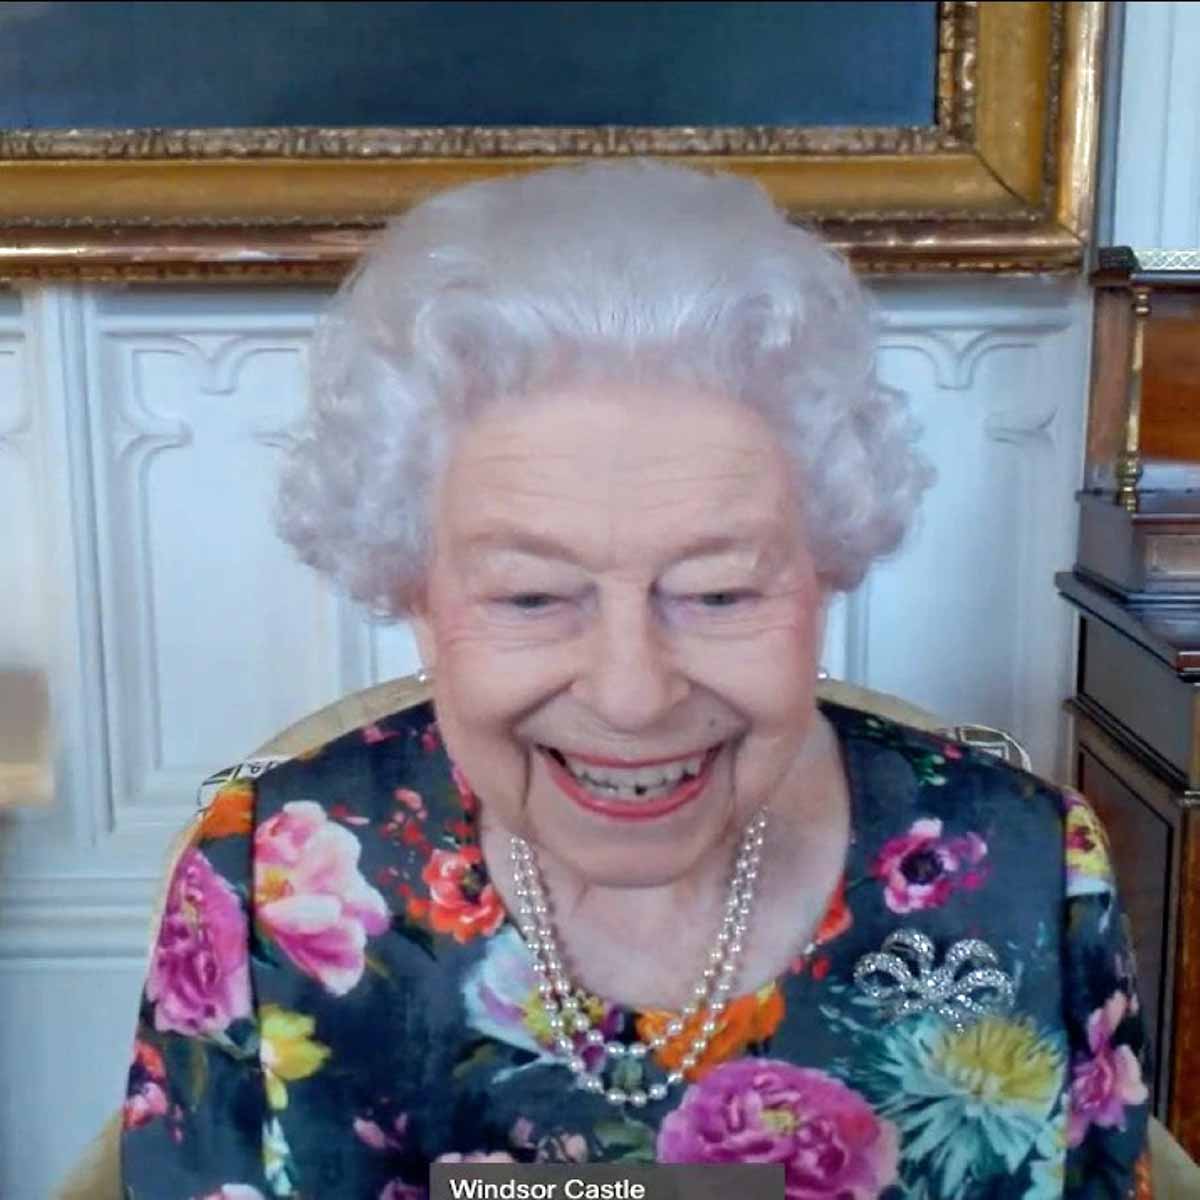 Preocupación por la salud de la Reina Isabel II: obligada a prolongar su descanso "al menos dos semanas"